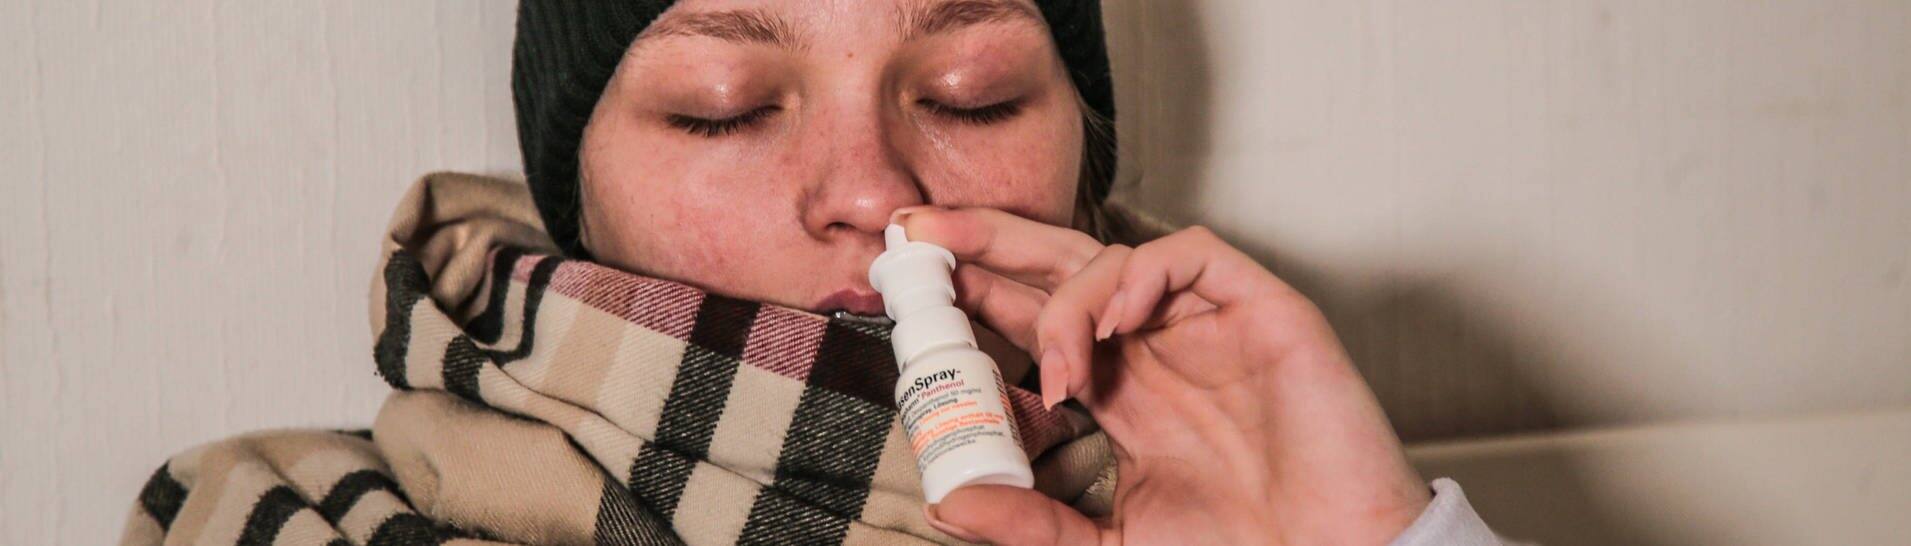 Kranke Frau mit Schal und schwarzer Mütze nutzt ein Nasenspray (Foto: IMAGO, impfung-gegen-grippe)